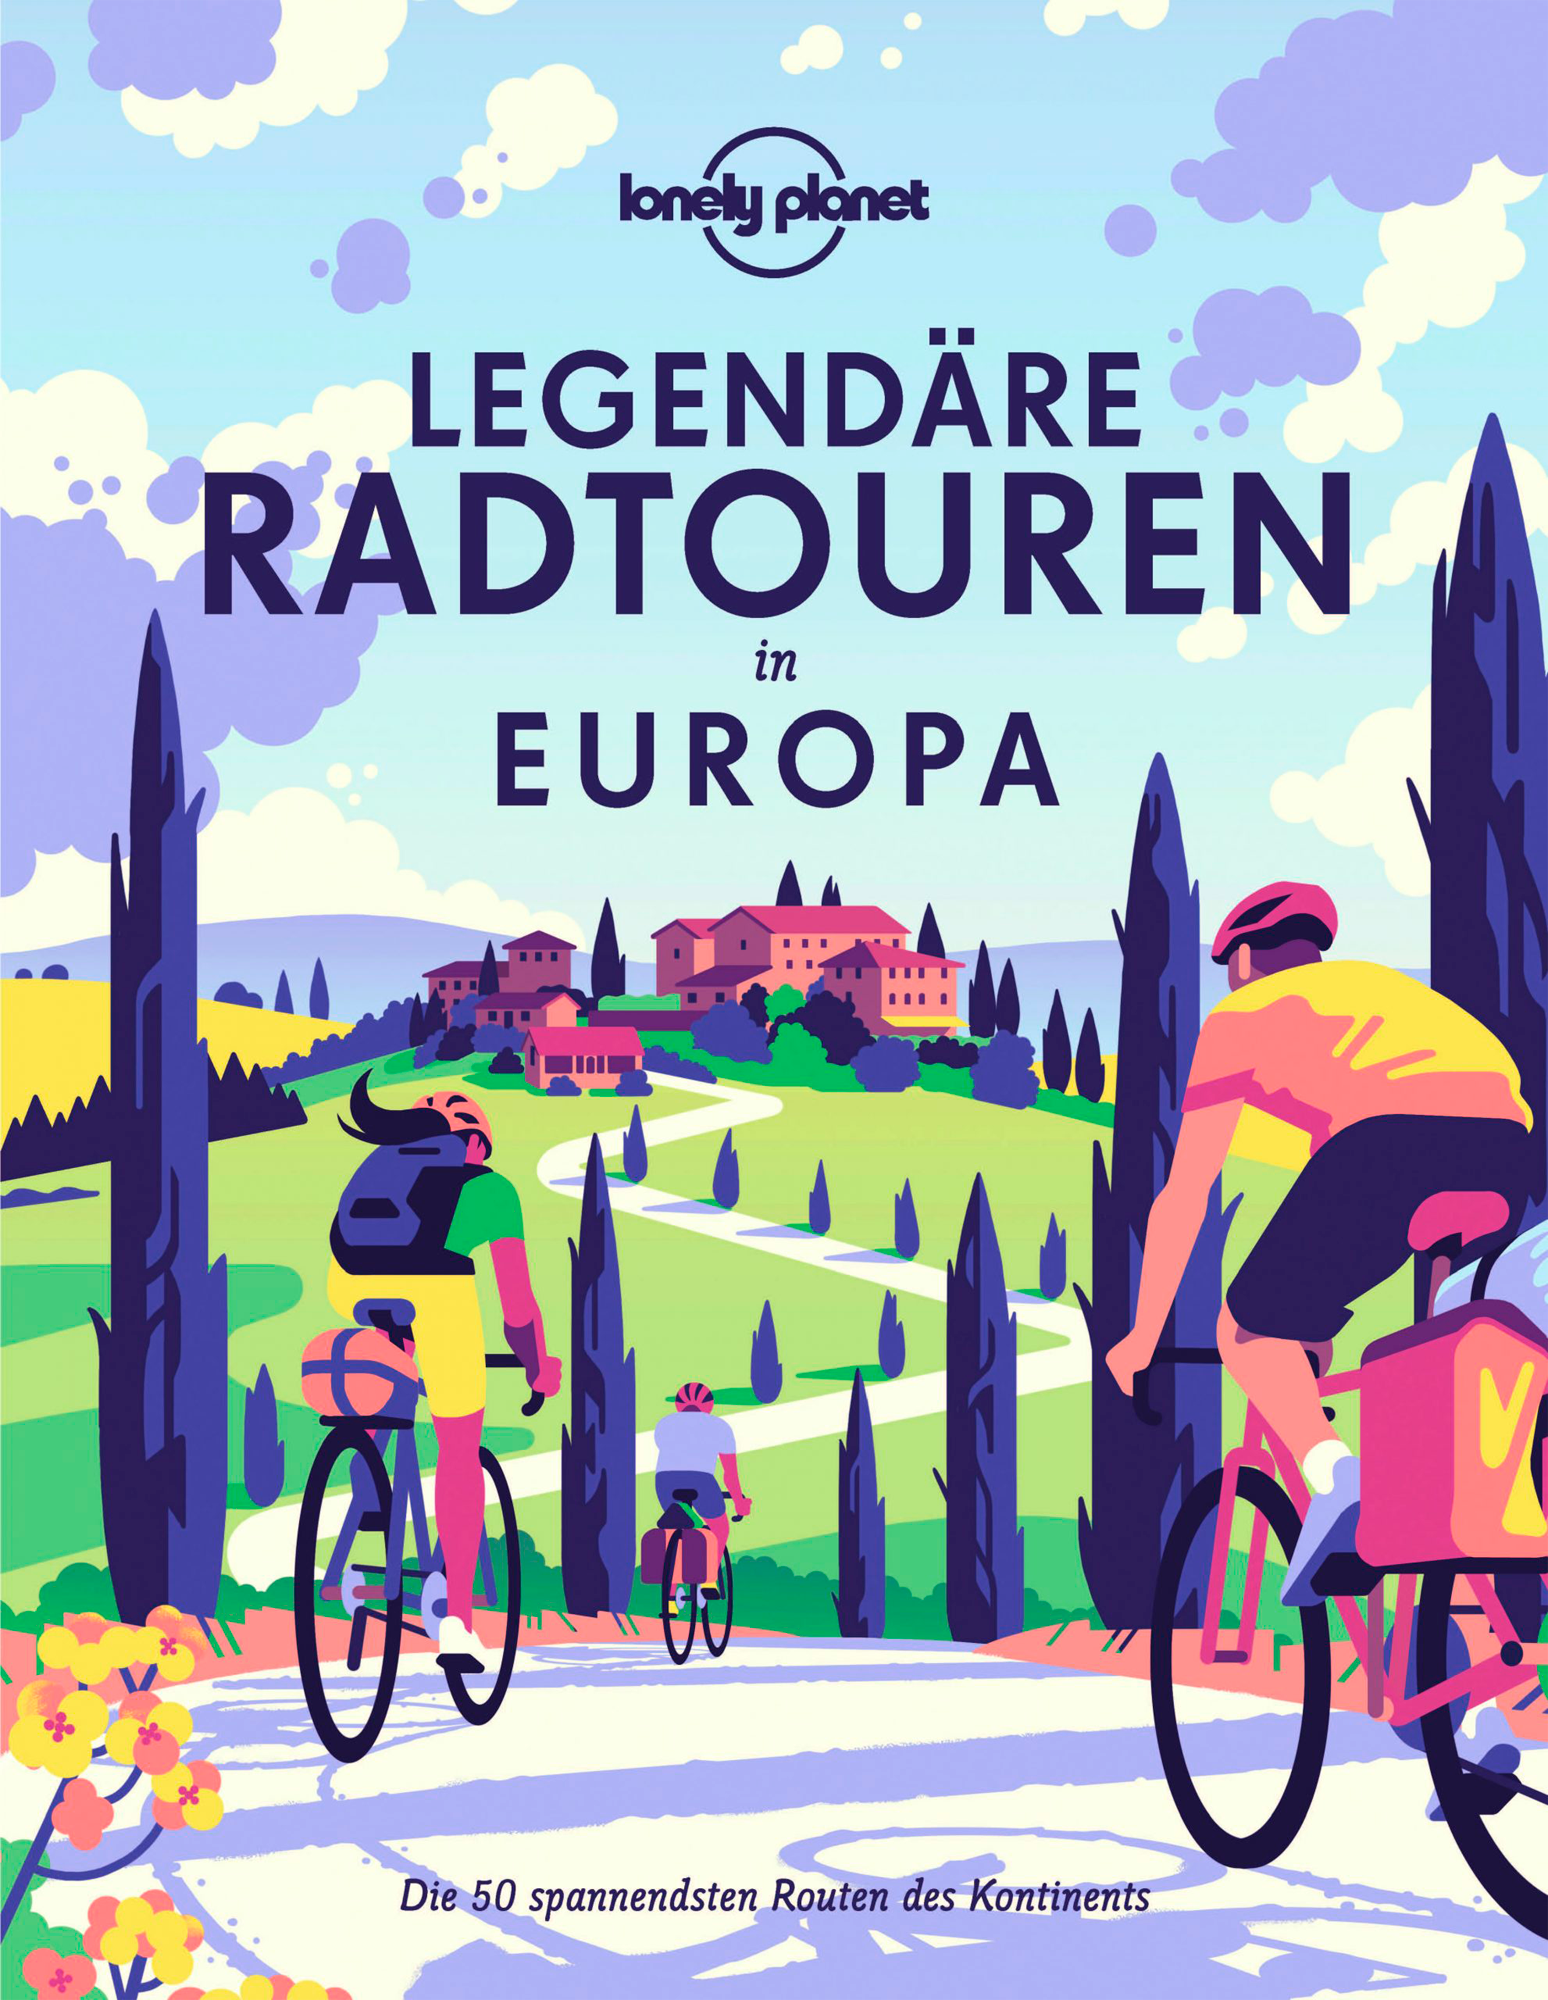 Lonely Planet Legendäre Radtouren in Europa Die 50 spannendsten Touren des Kontinents Buch